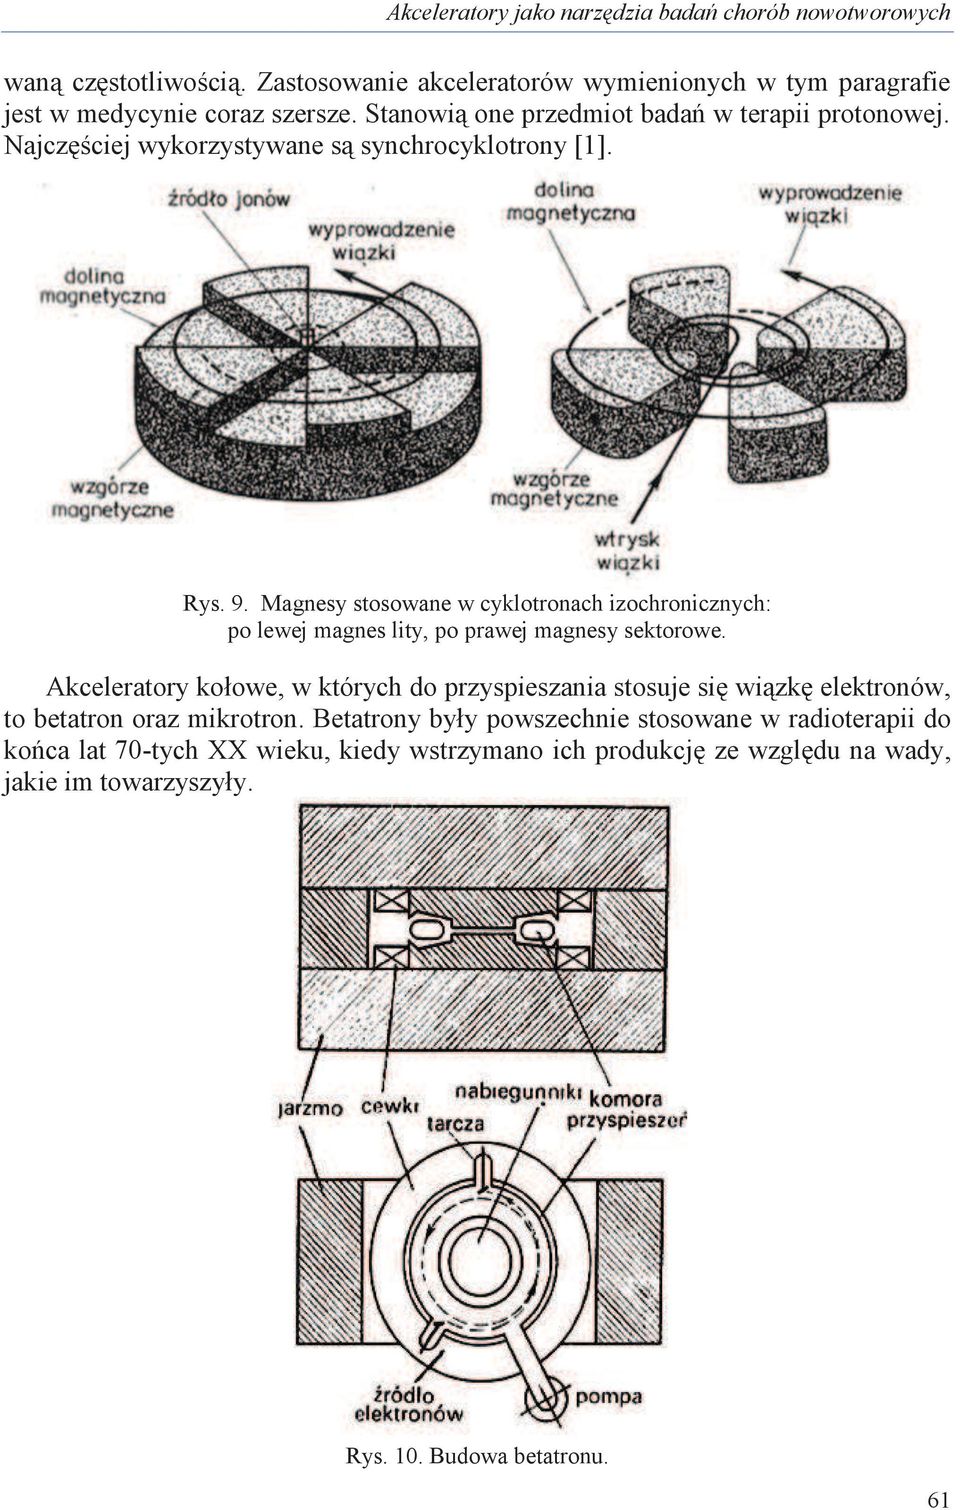 Magnesy stosowane w cyklotronach izochronicznych: po lewej magnes lity, po prawej magnesy sektorowe.